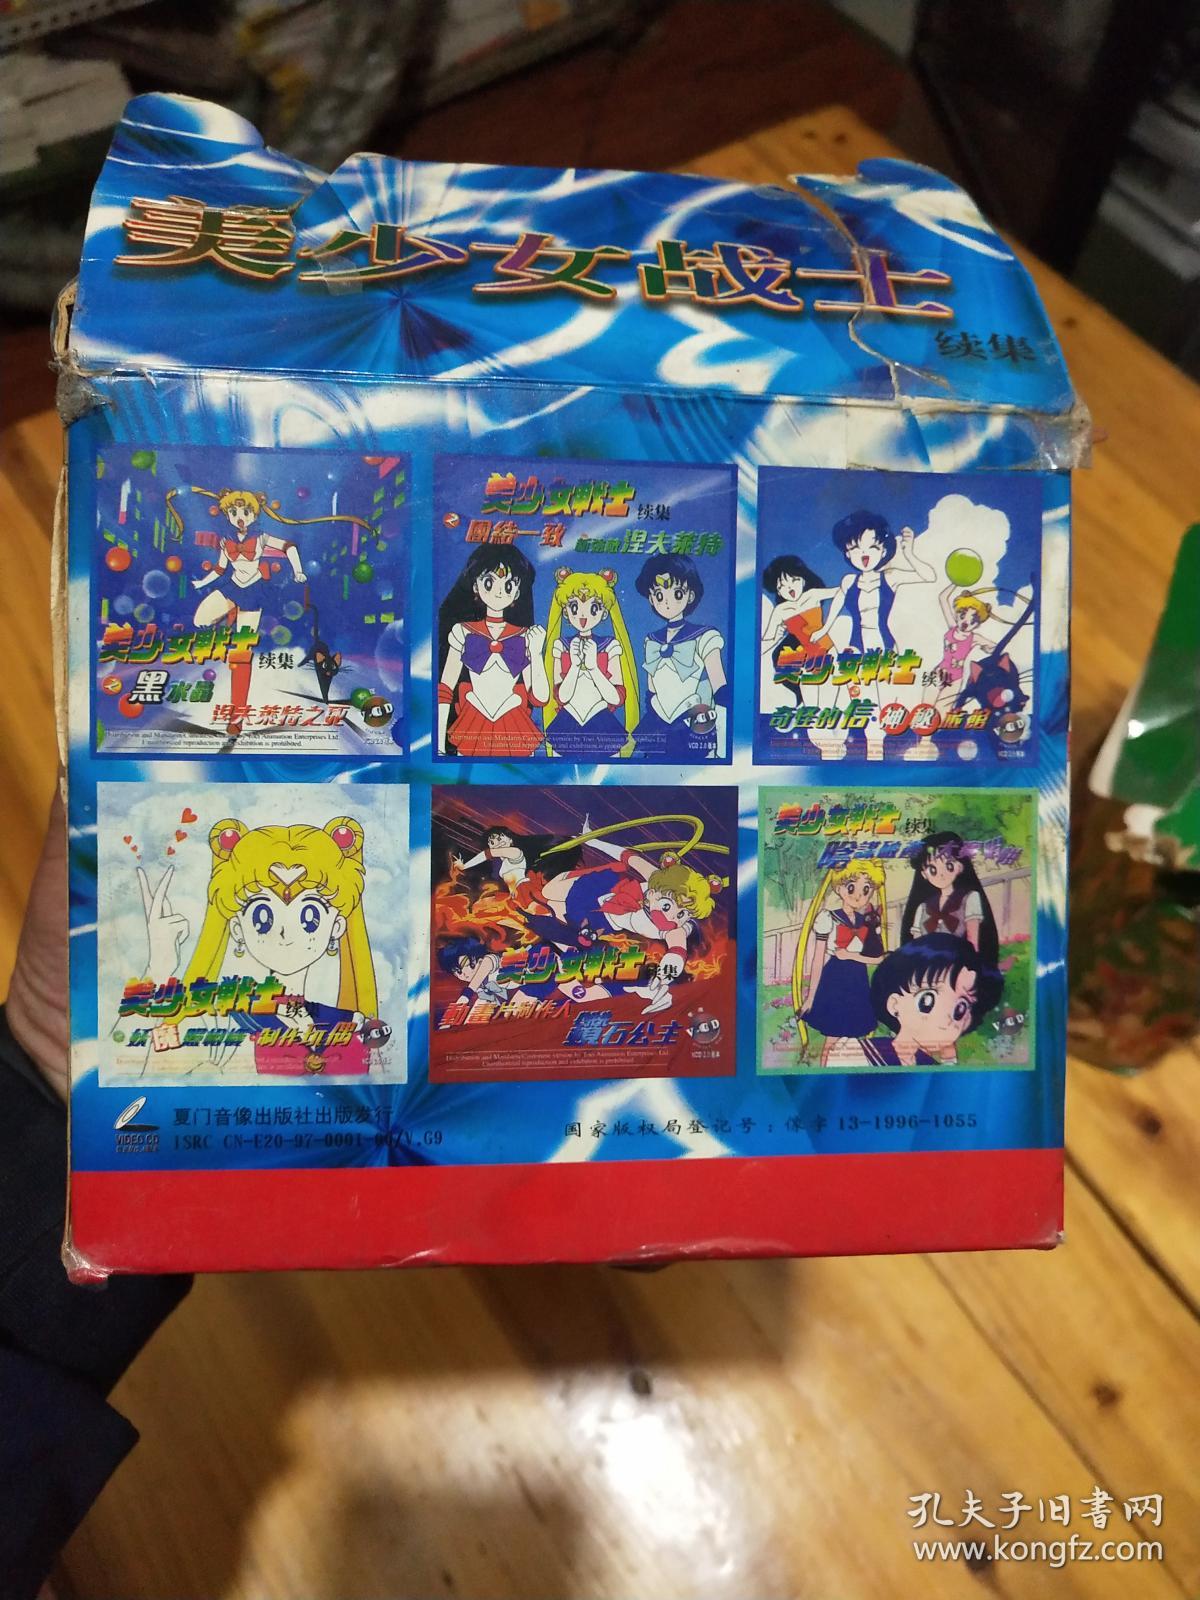 美少女战士续集VCD 绝版六盒装如图